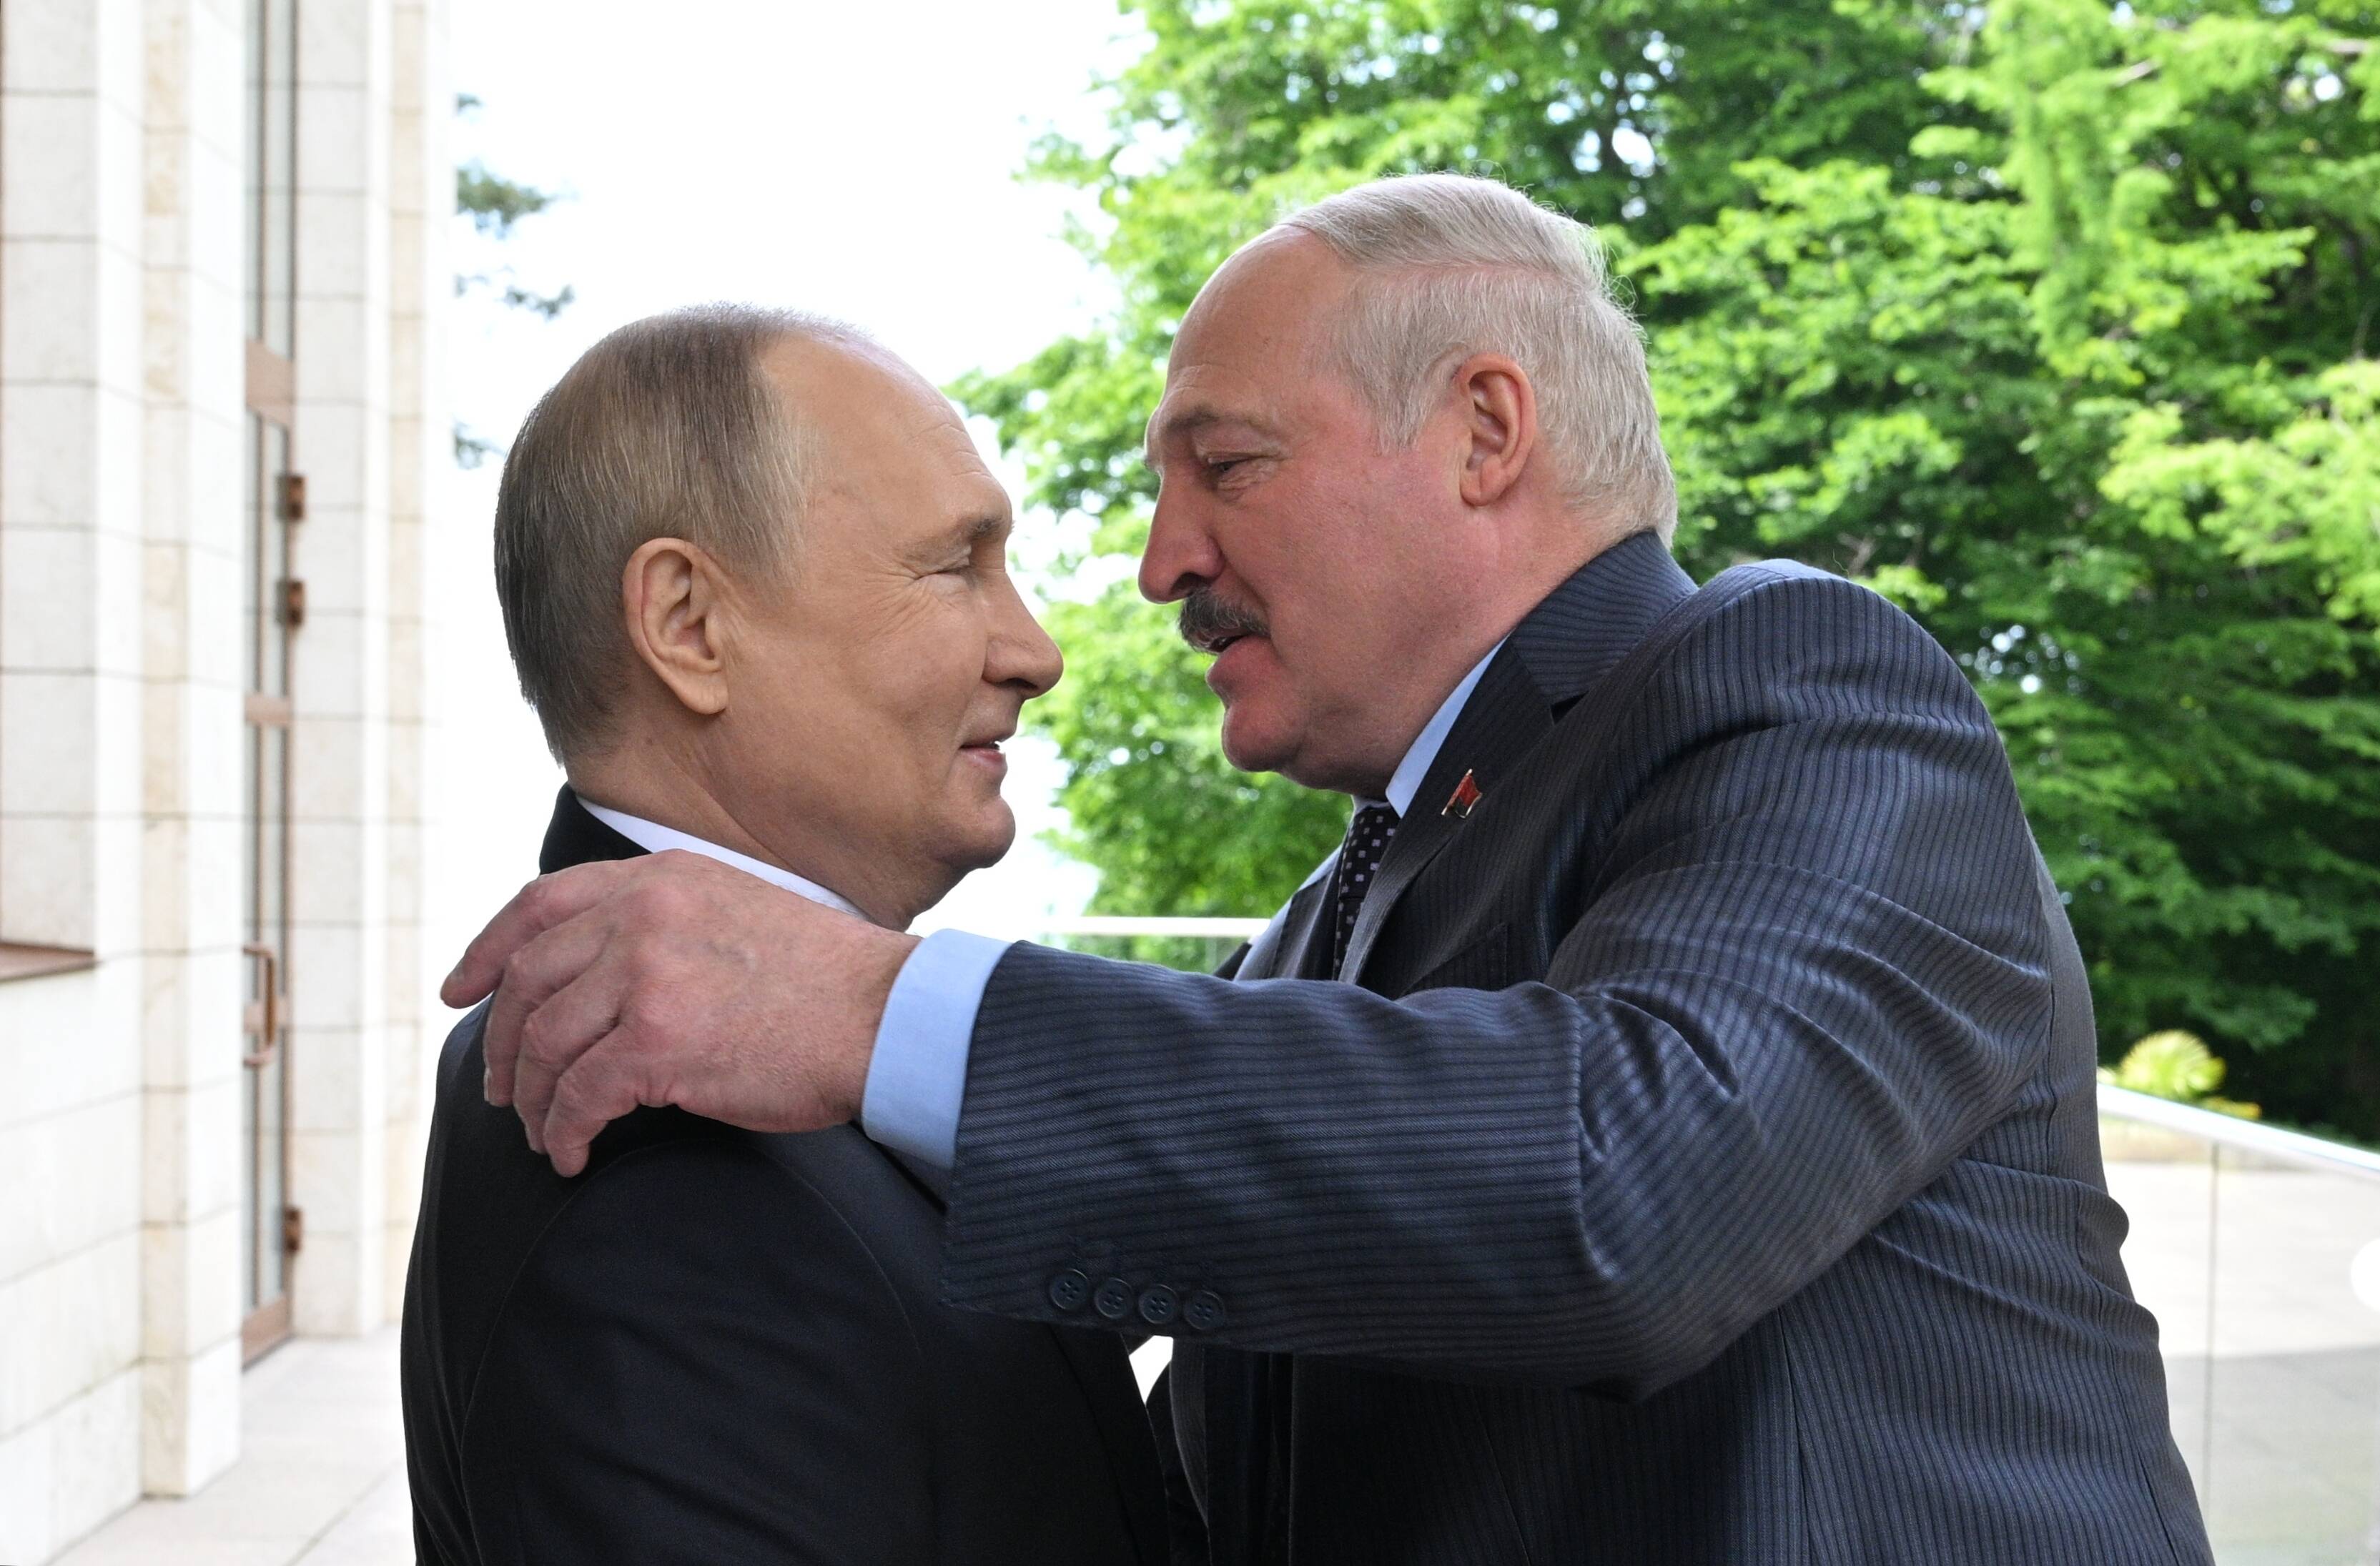 Eilmeldung! Weißrussischer Außenminister tot! Hat es mit Putins Todesliste zu tun?